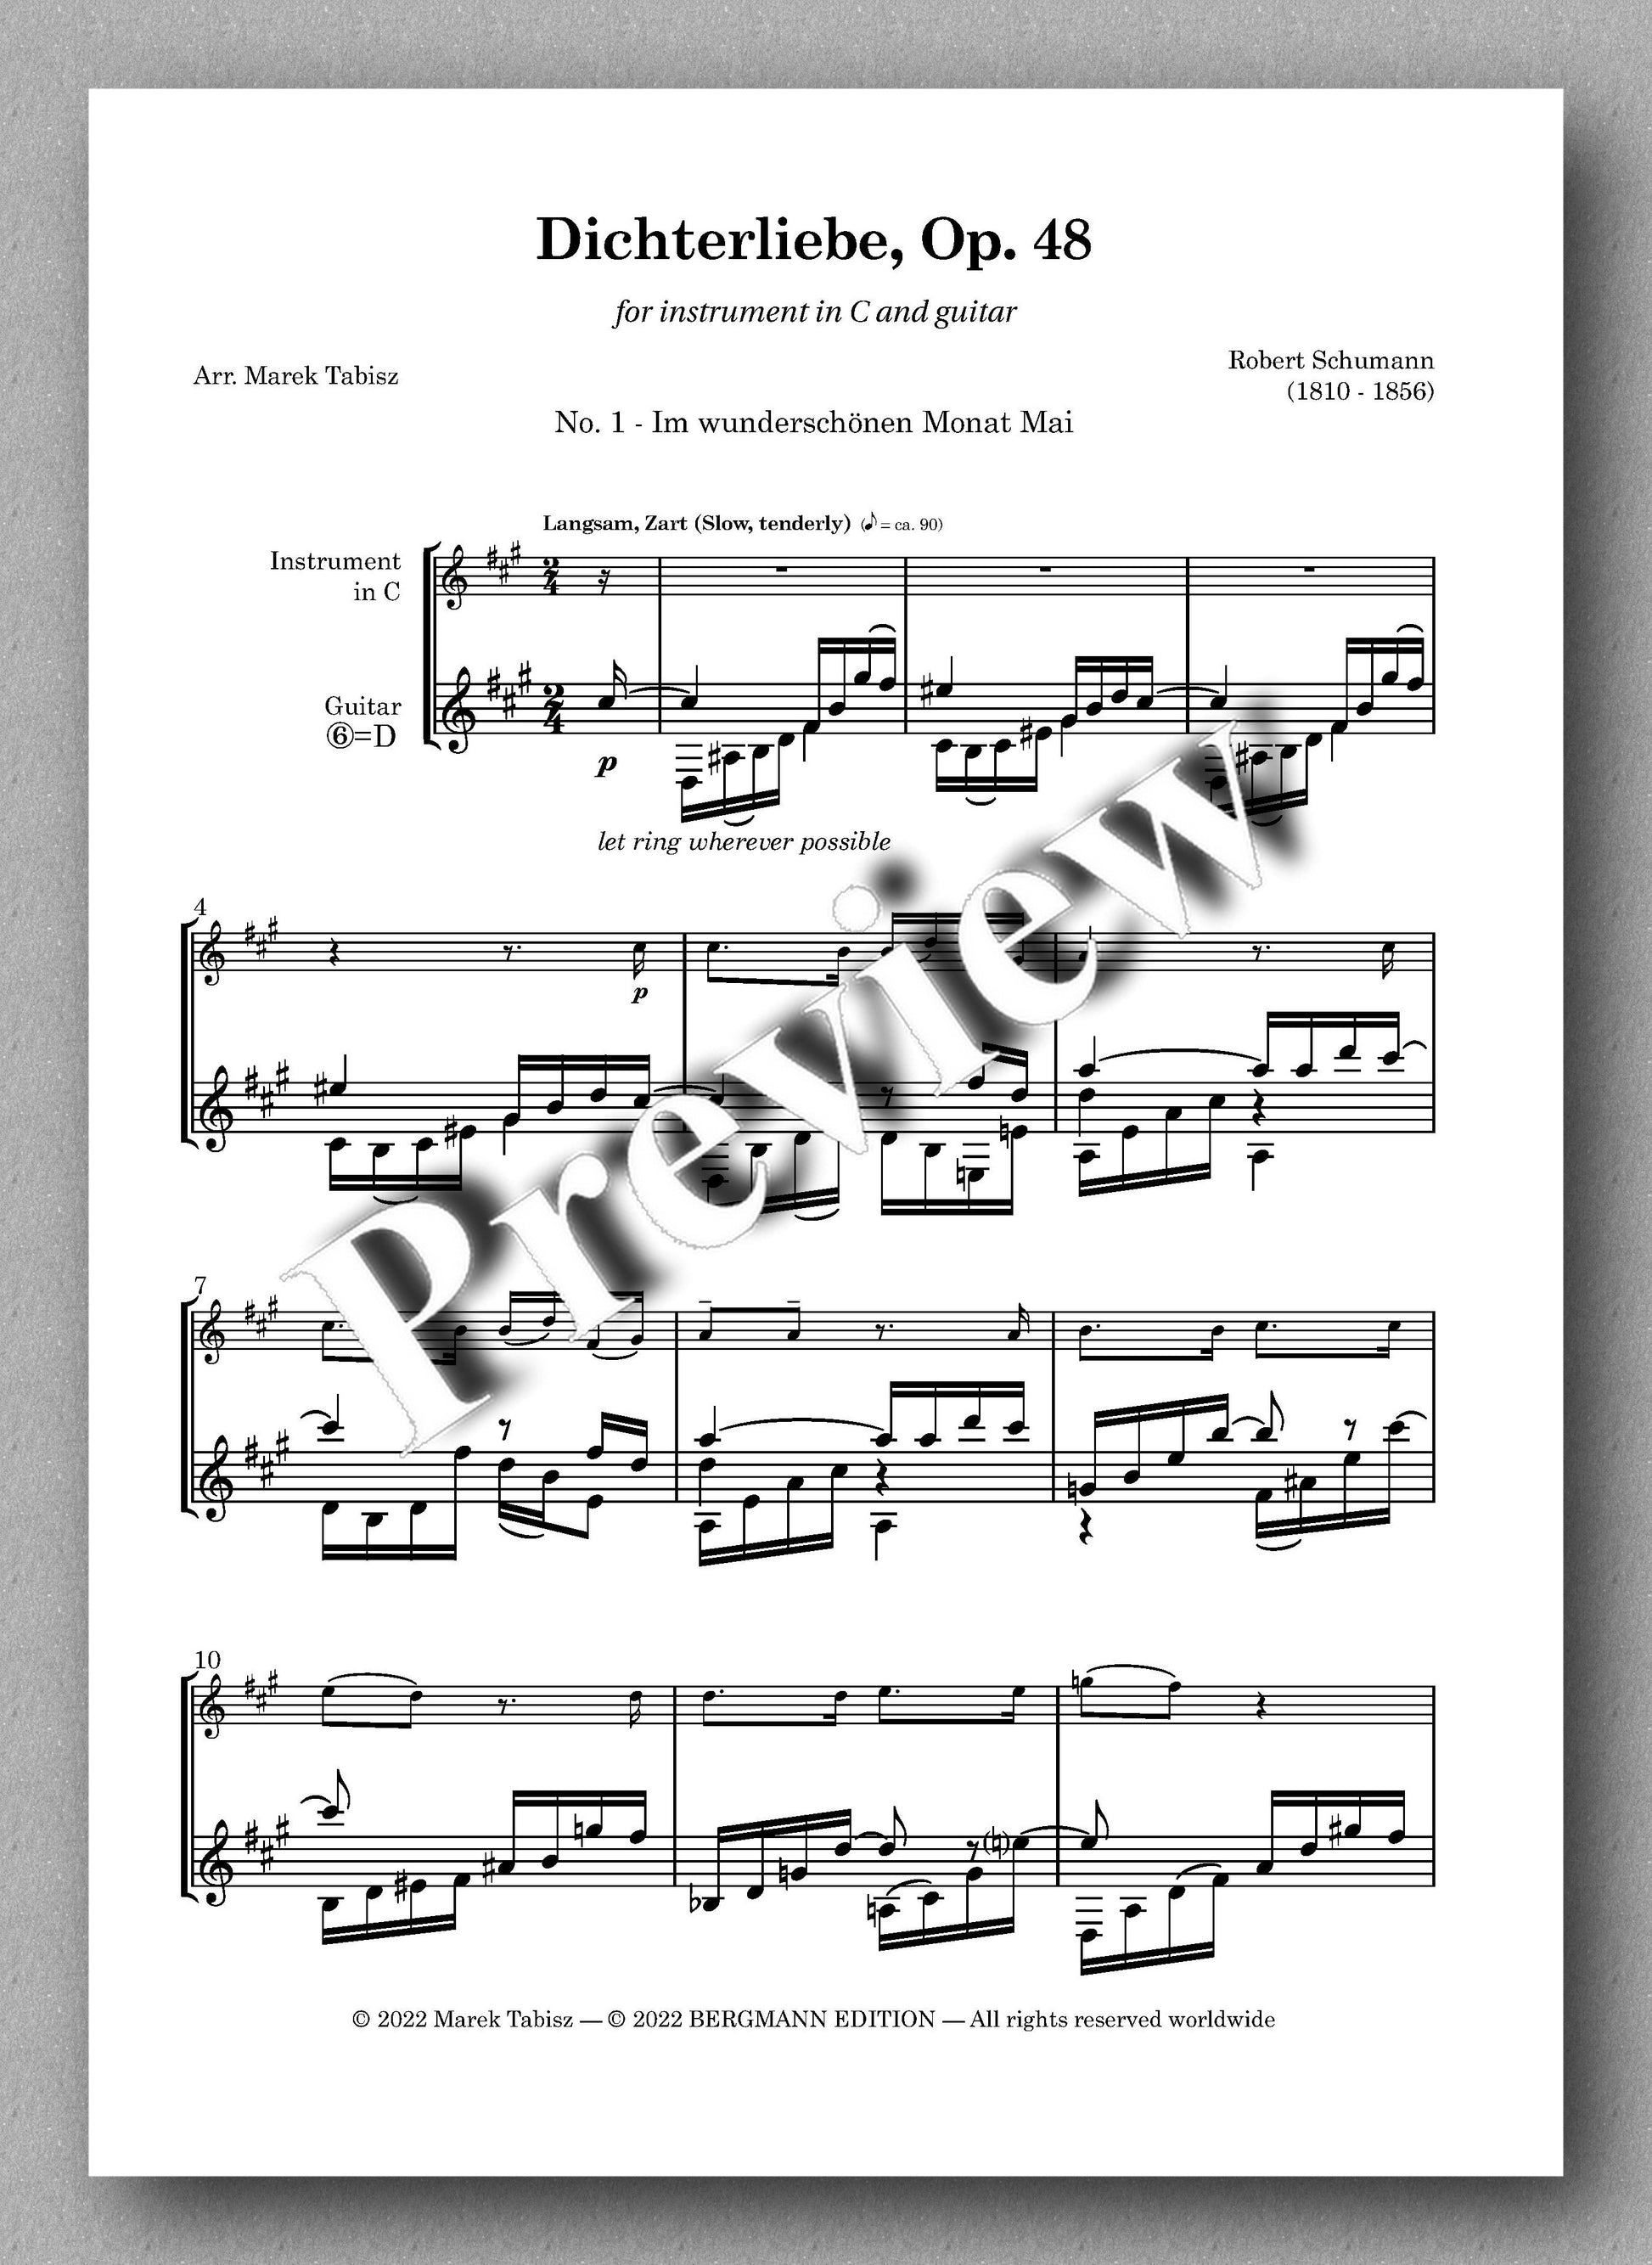 Robert Schumann, Dichterliebe Op. 48 - preview of No. 1 - Im wunderschönen Monat Mai